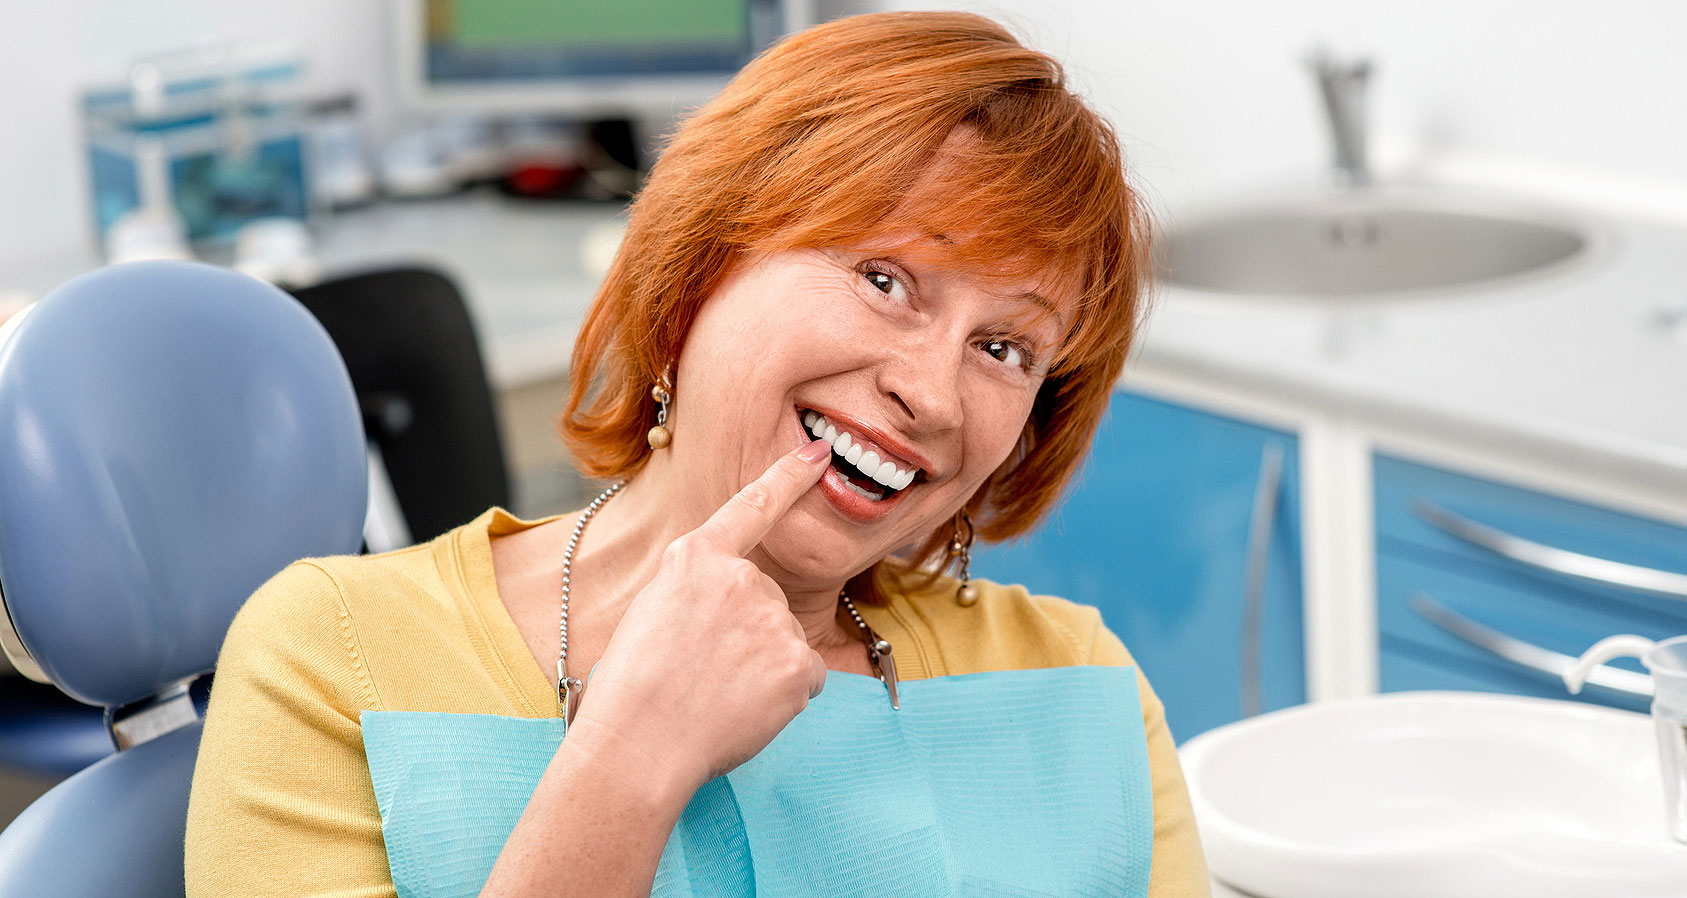 Dental implants patients after treatment